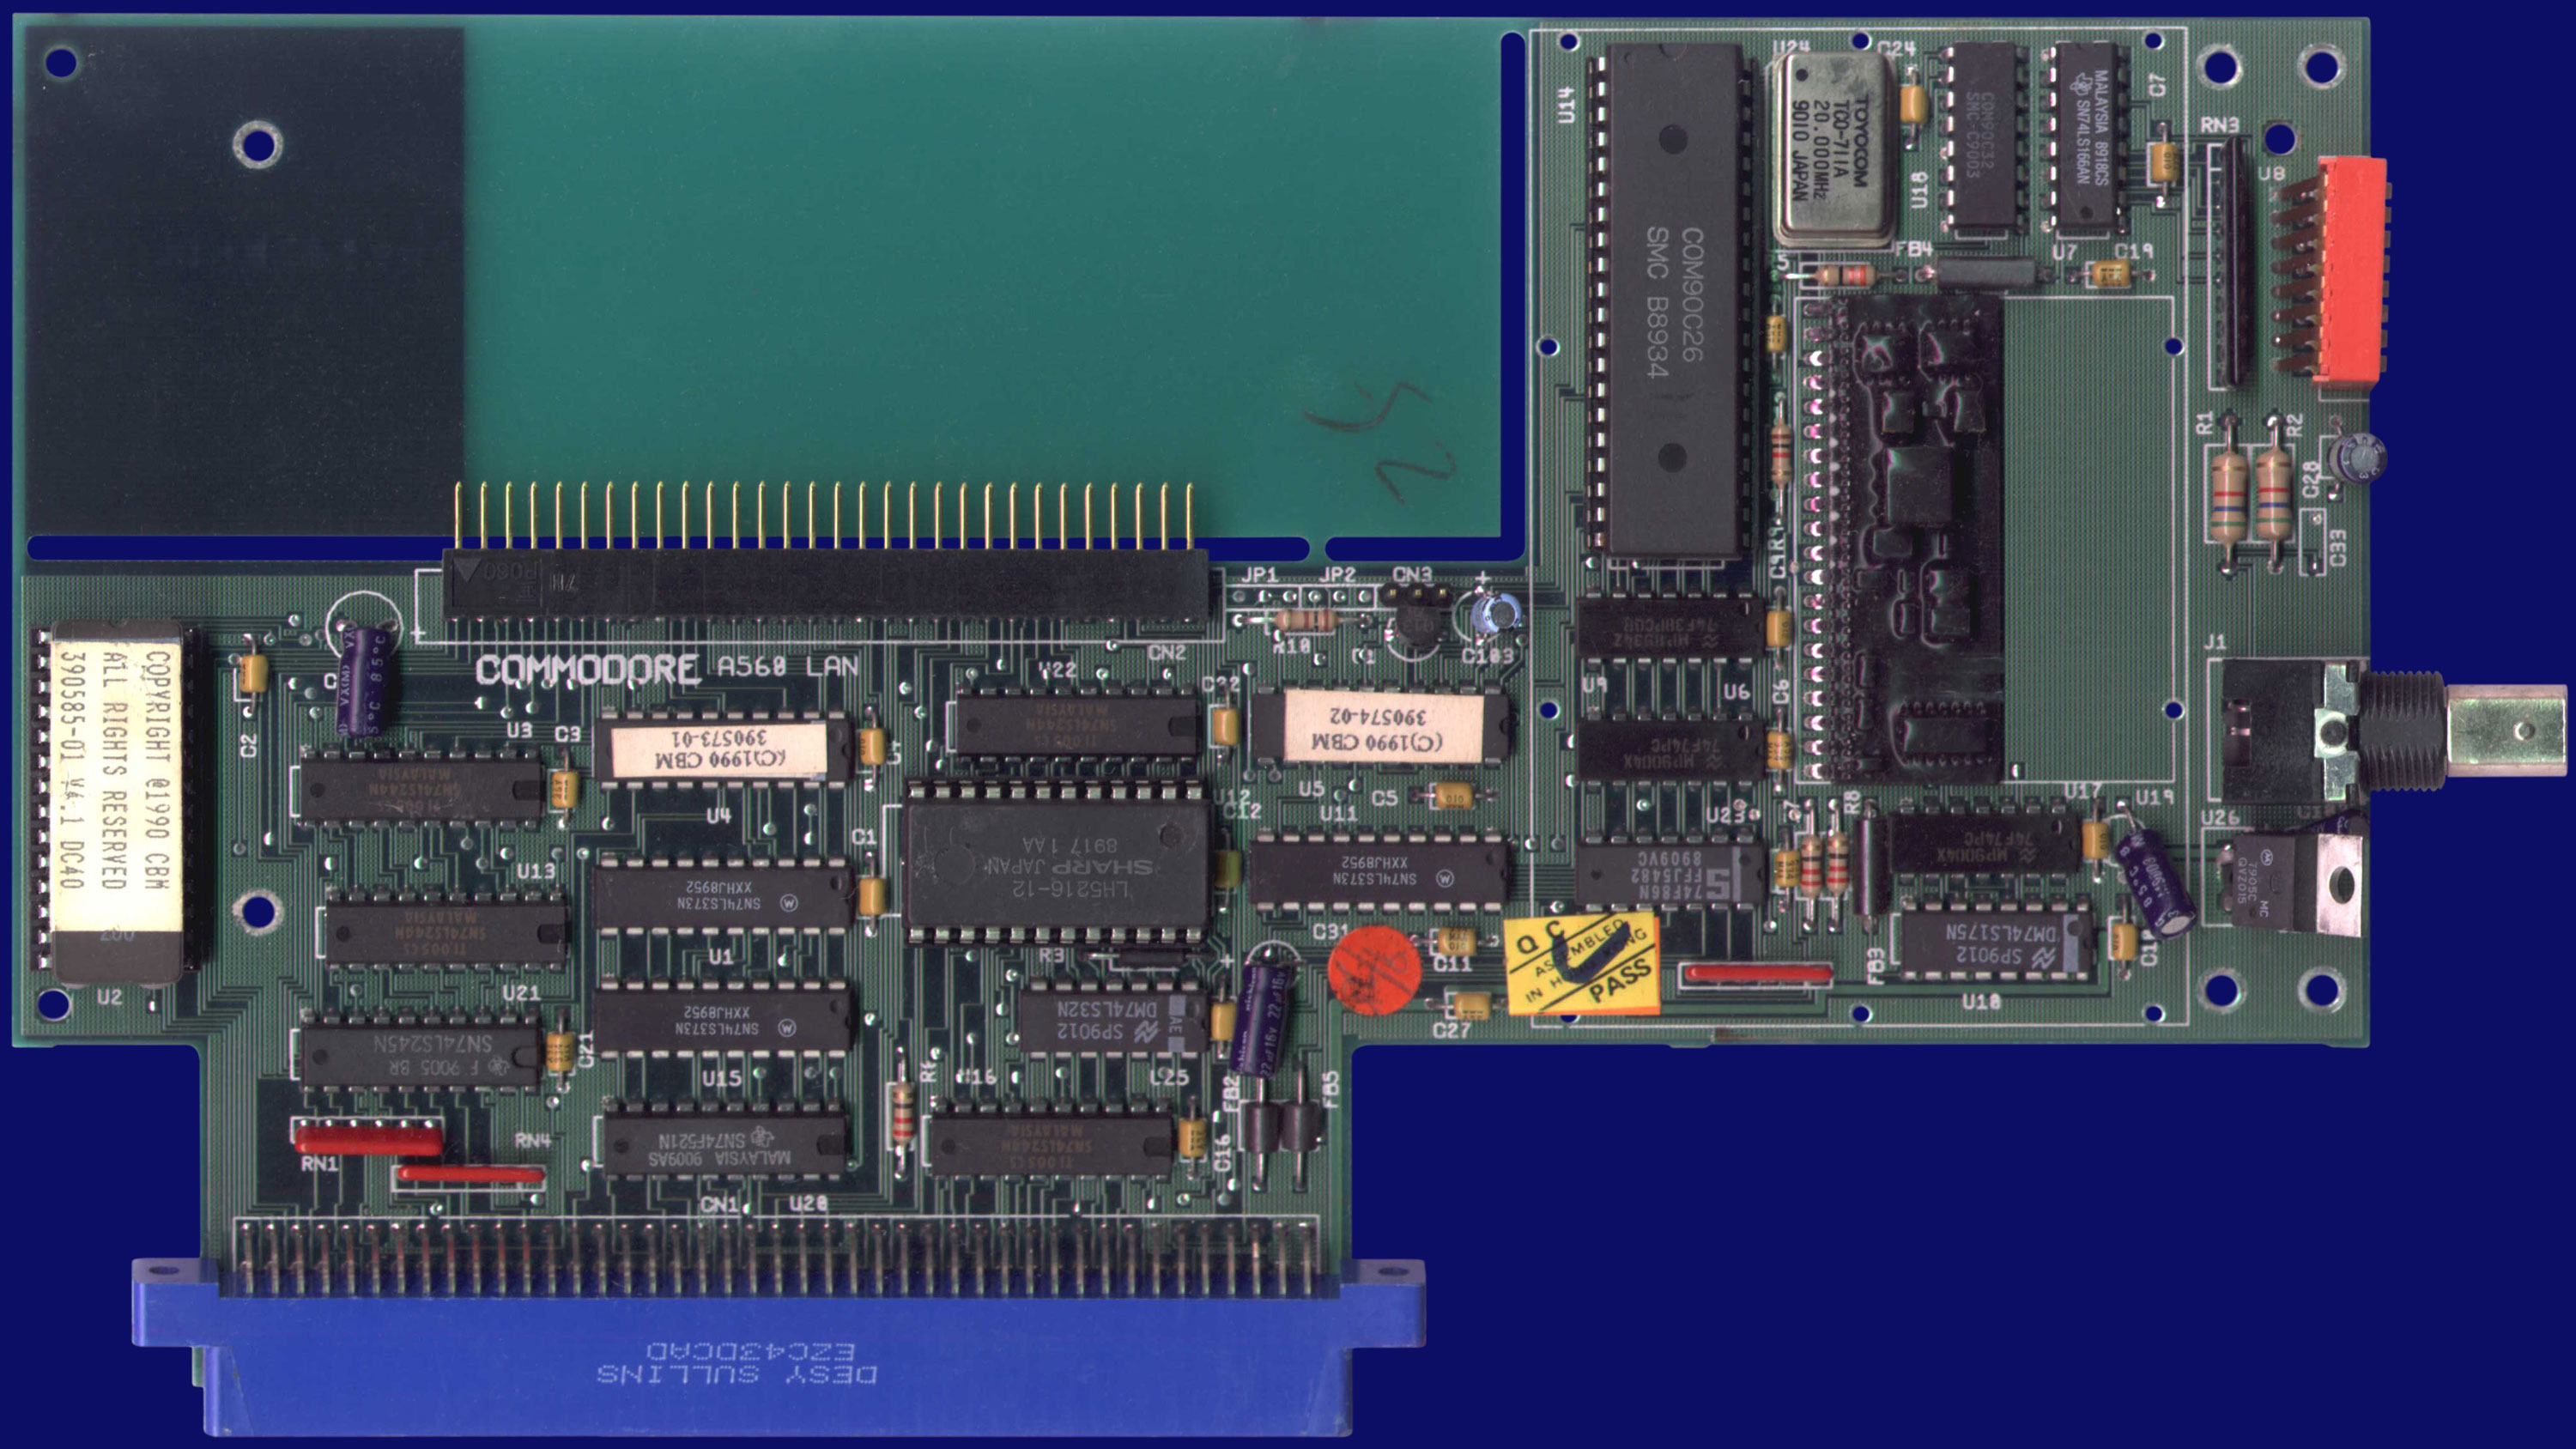 Commodore A560 - Platine, Vorderseite